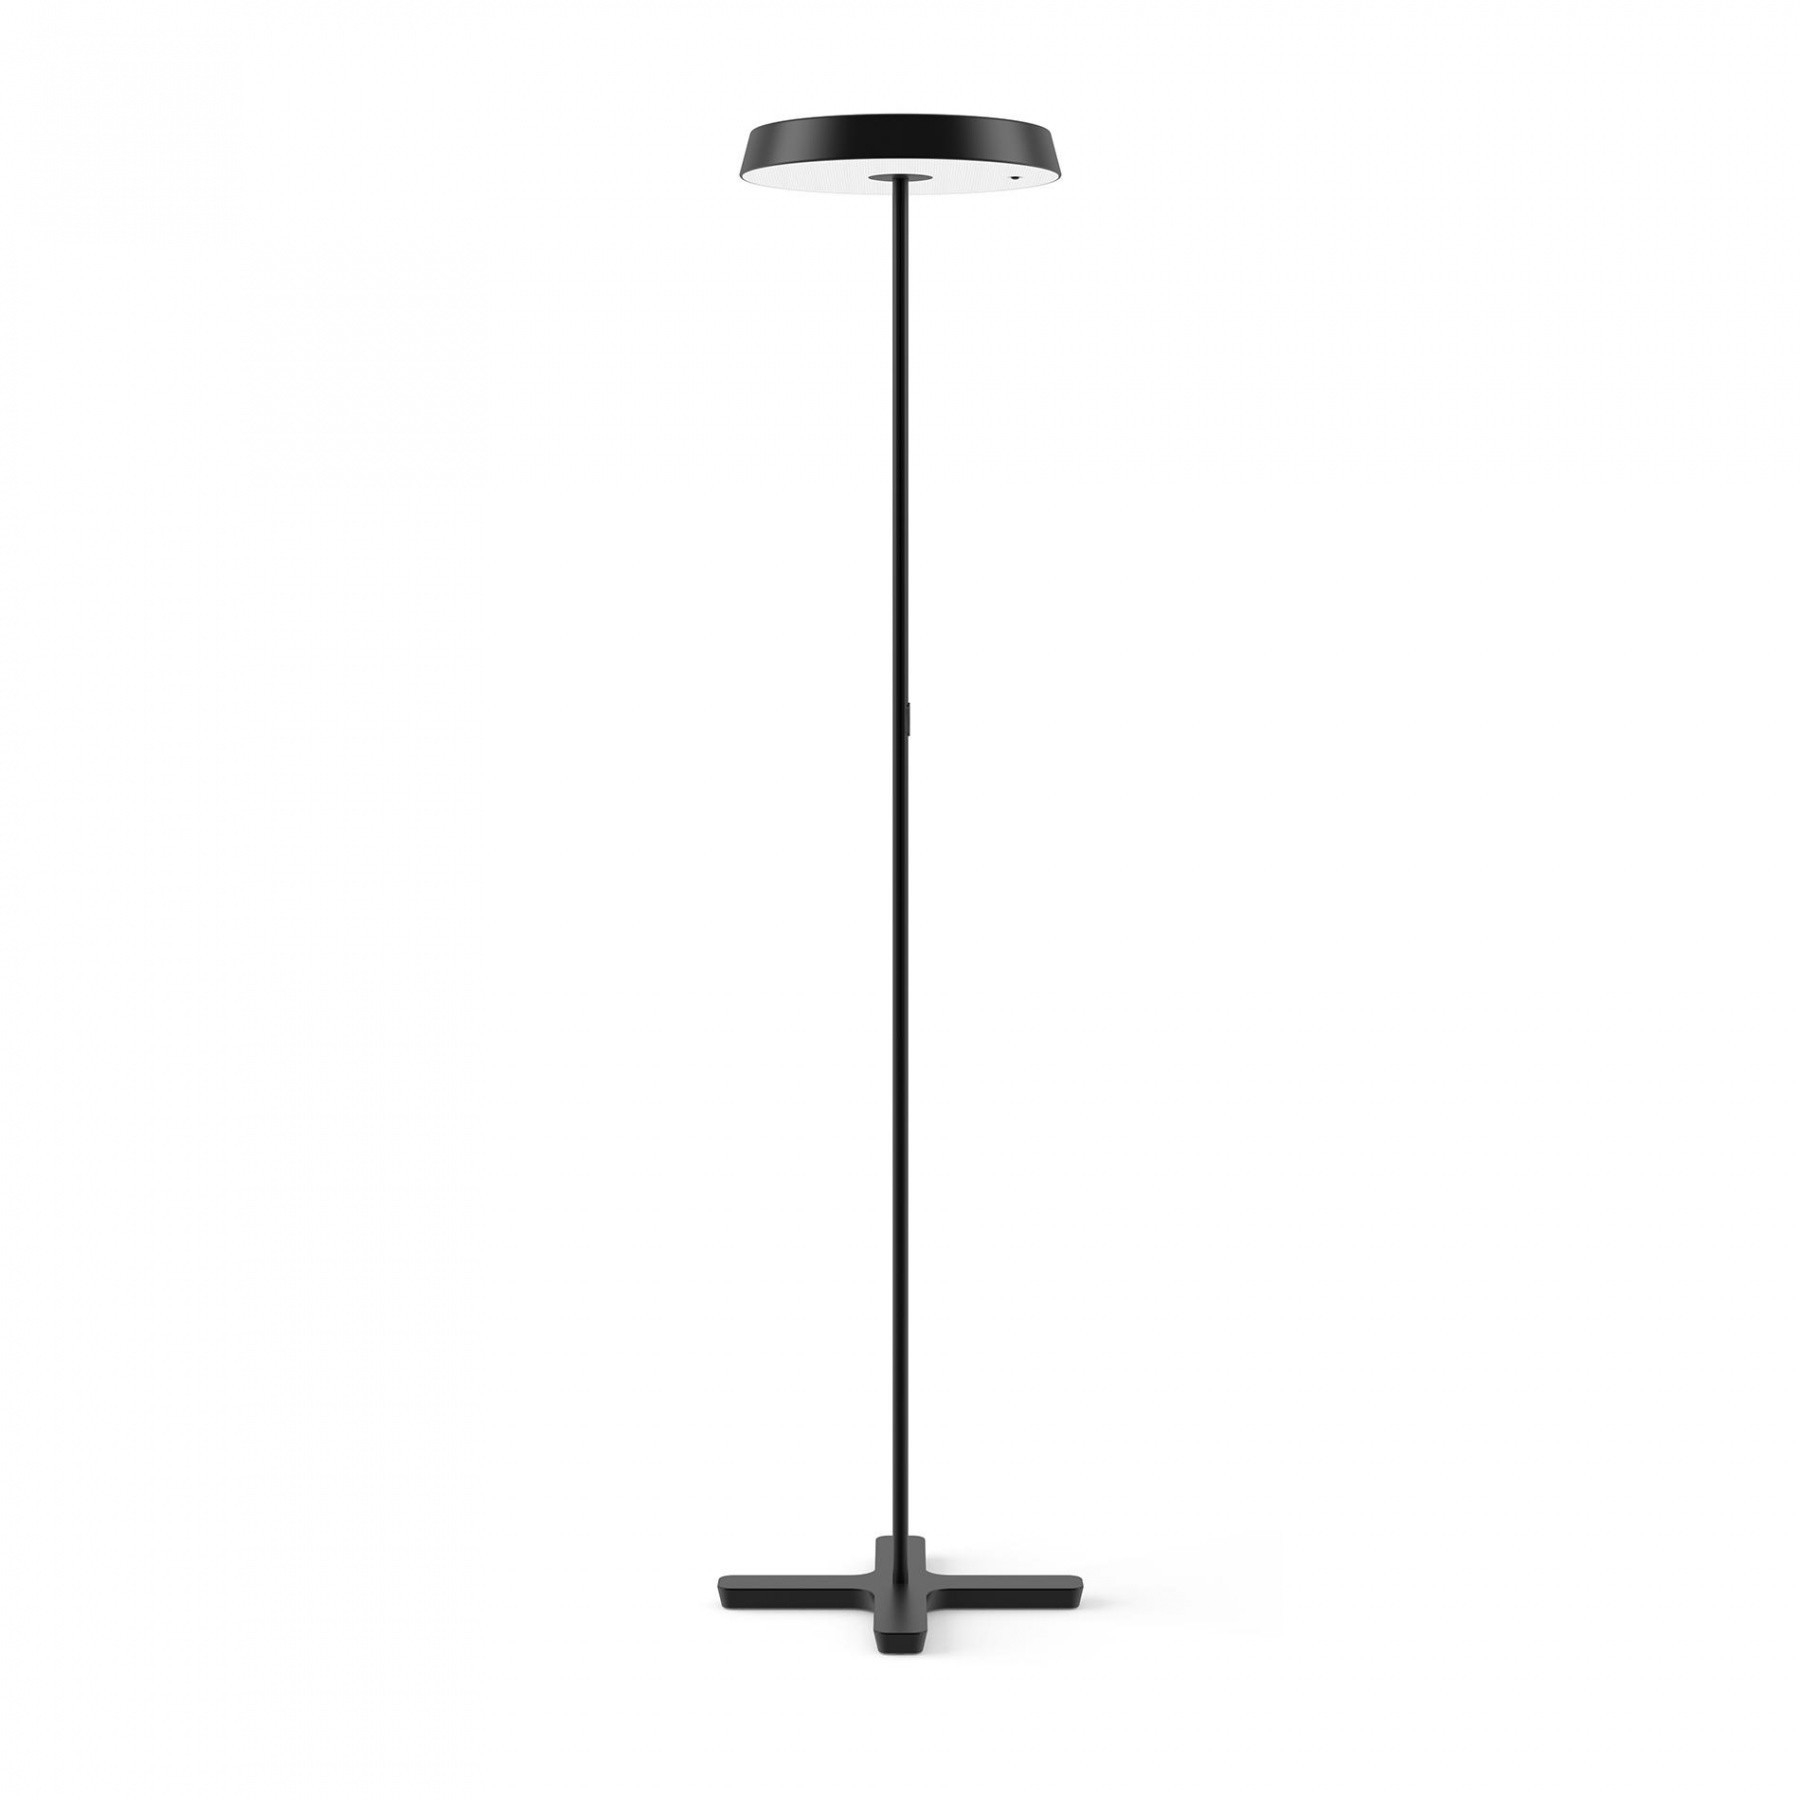 Koi S Led Floor Lamp intended for dimensions 1800 X 1800